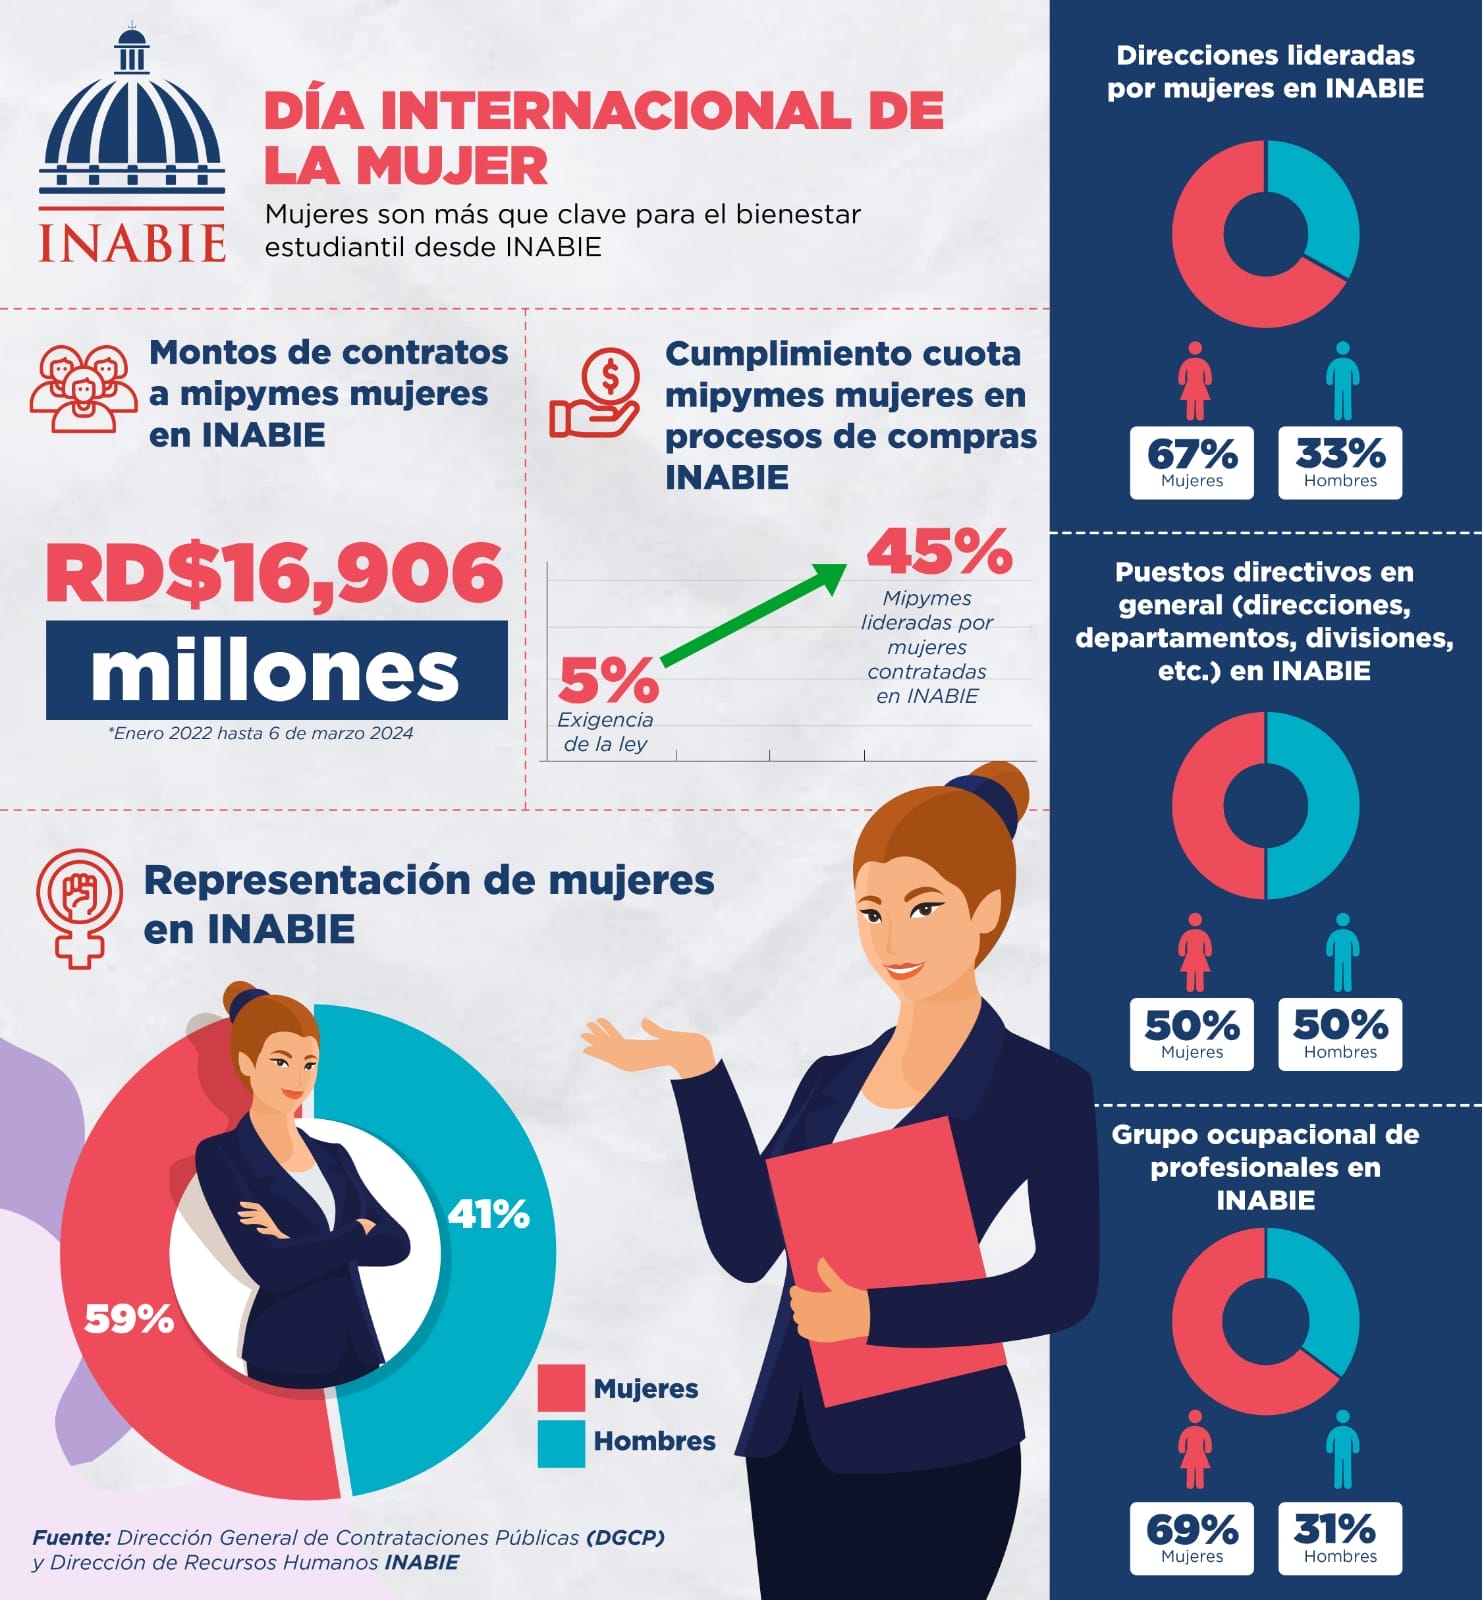 Mipymes mujeres han recibido contratos ascendentes a RD$16,906 millones en INABIE